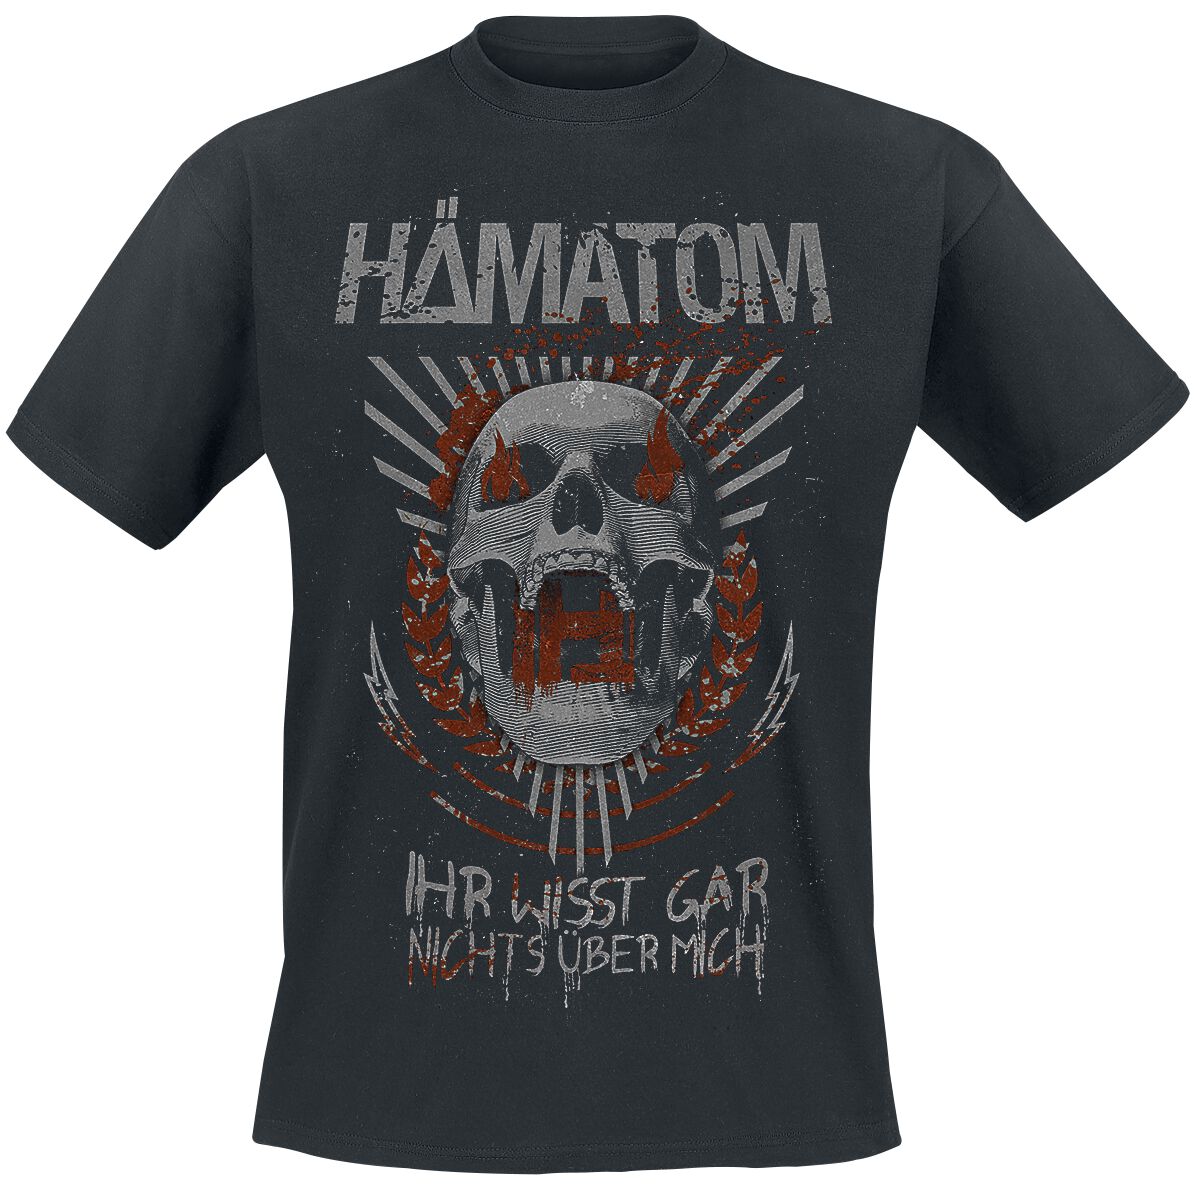 Hämatom T-Shirt - Ihr wisst gar nichts über mich - S bis 5XL - für Männer - Größe 5XL - schwarz  - Lizenziertes Merchandise!